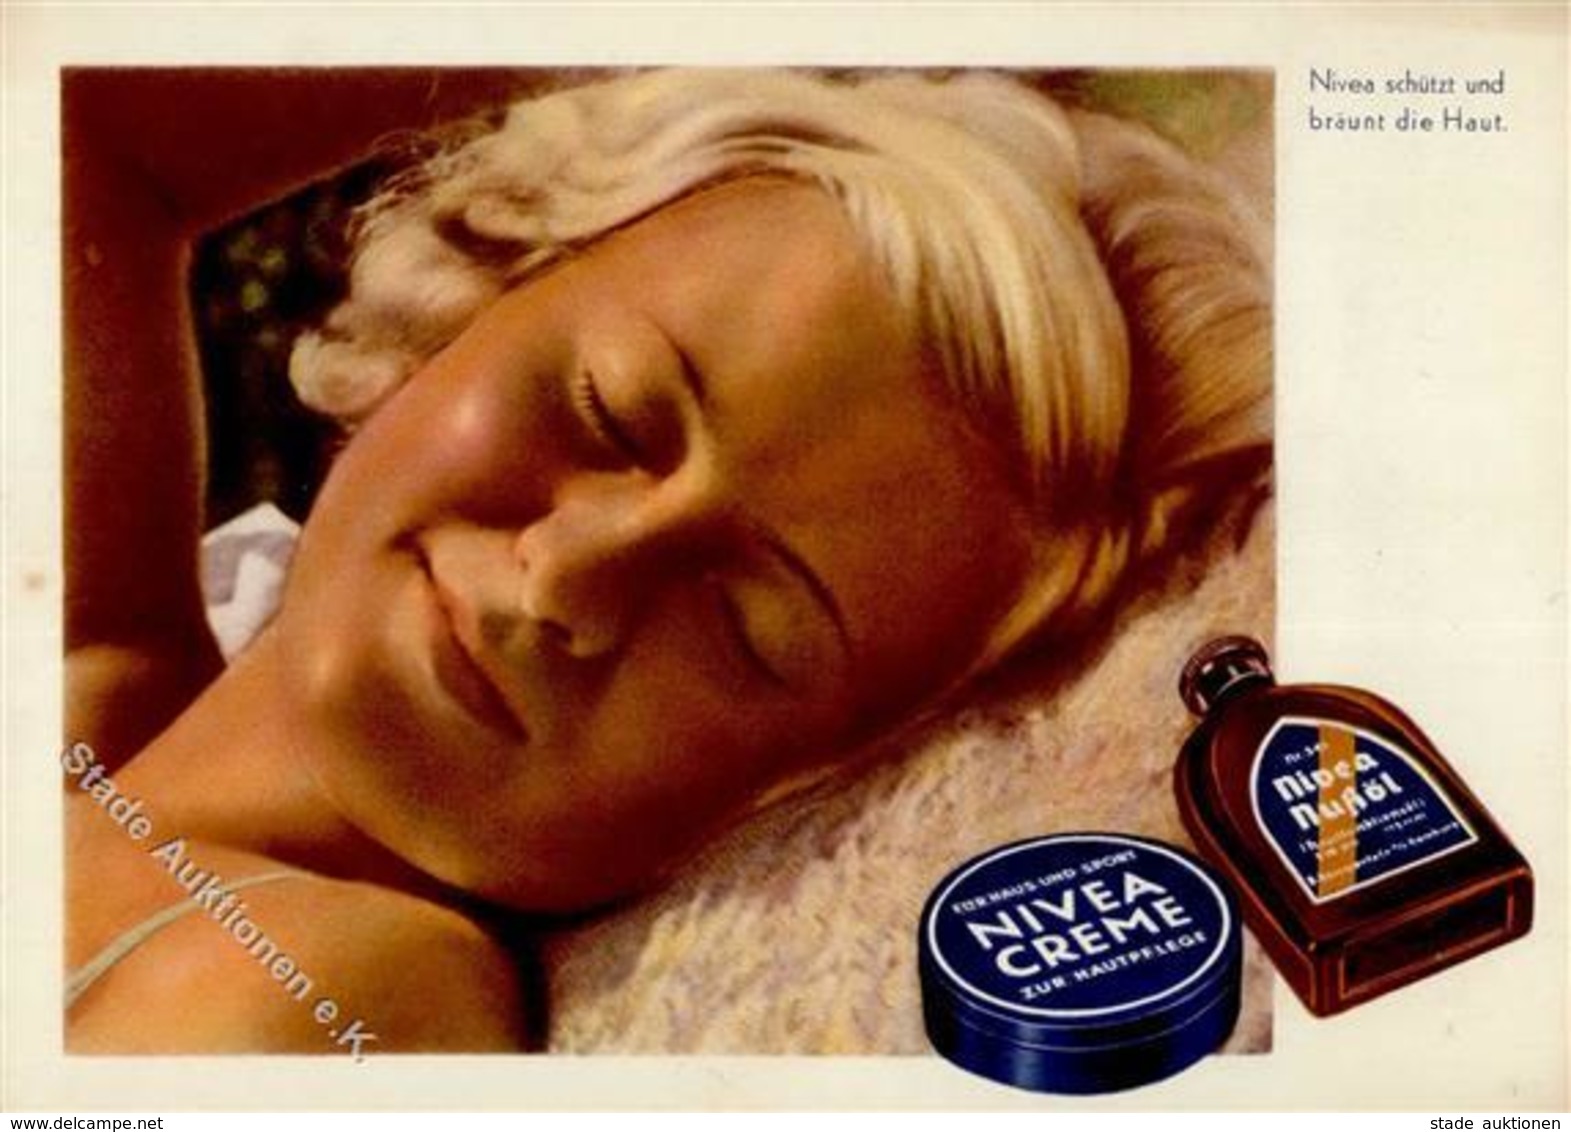 Werbung Kosmetik Nivea Werbe AK I-II Publicite - Werbepostkarten